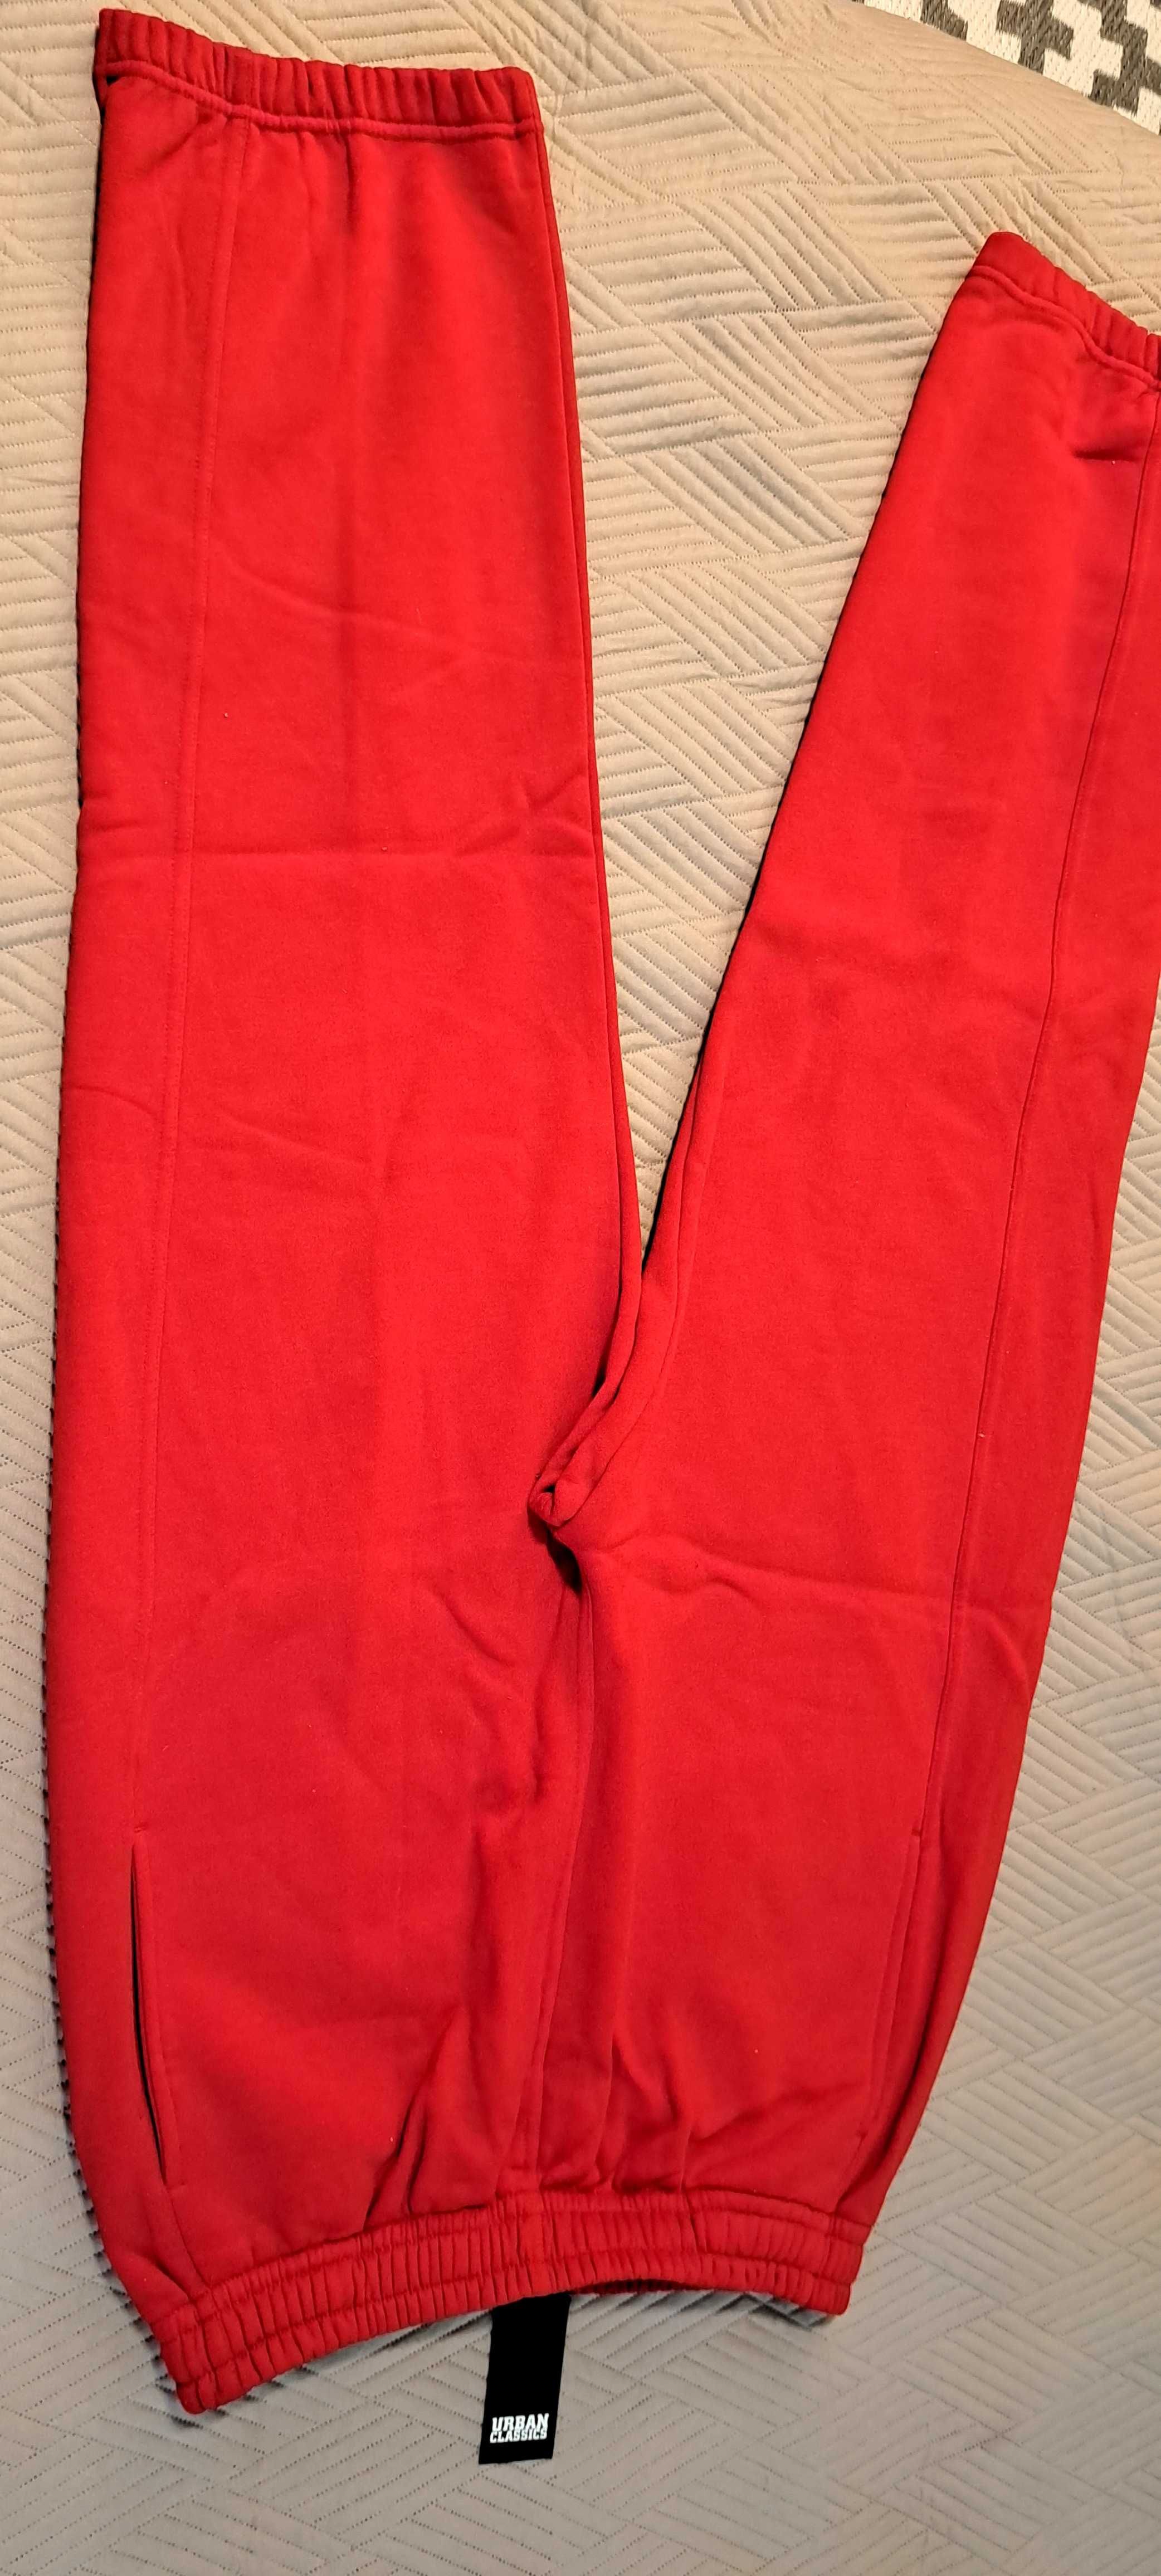 Spodni sportowe czerwone